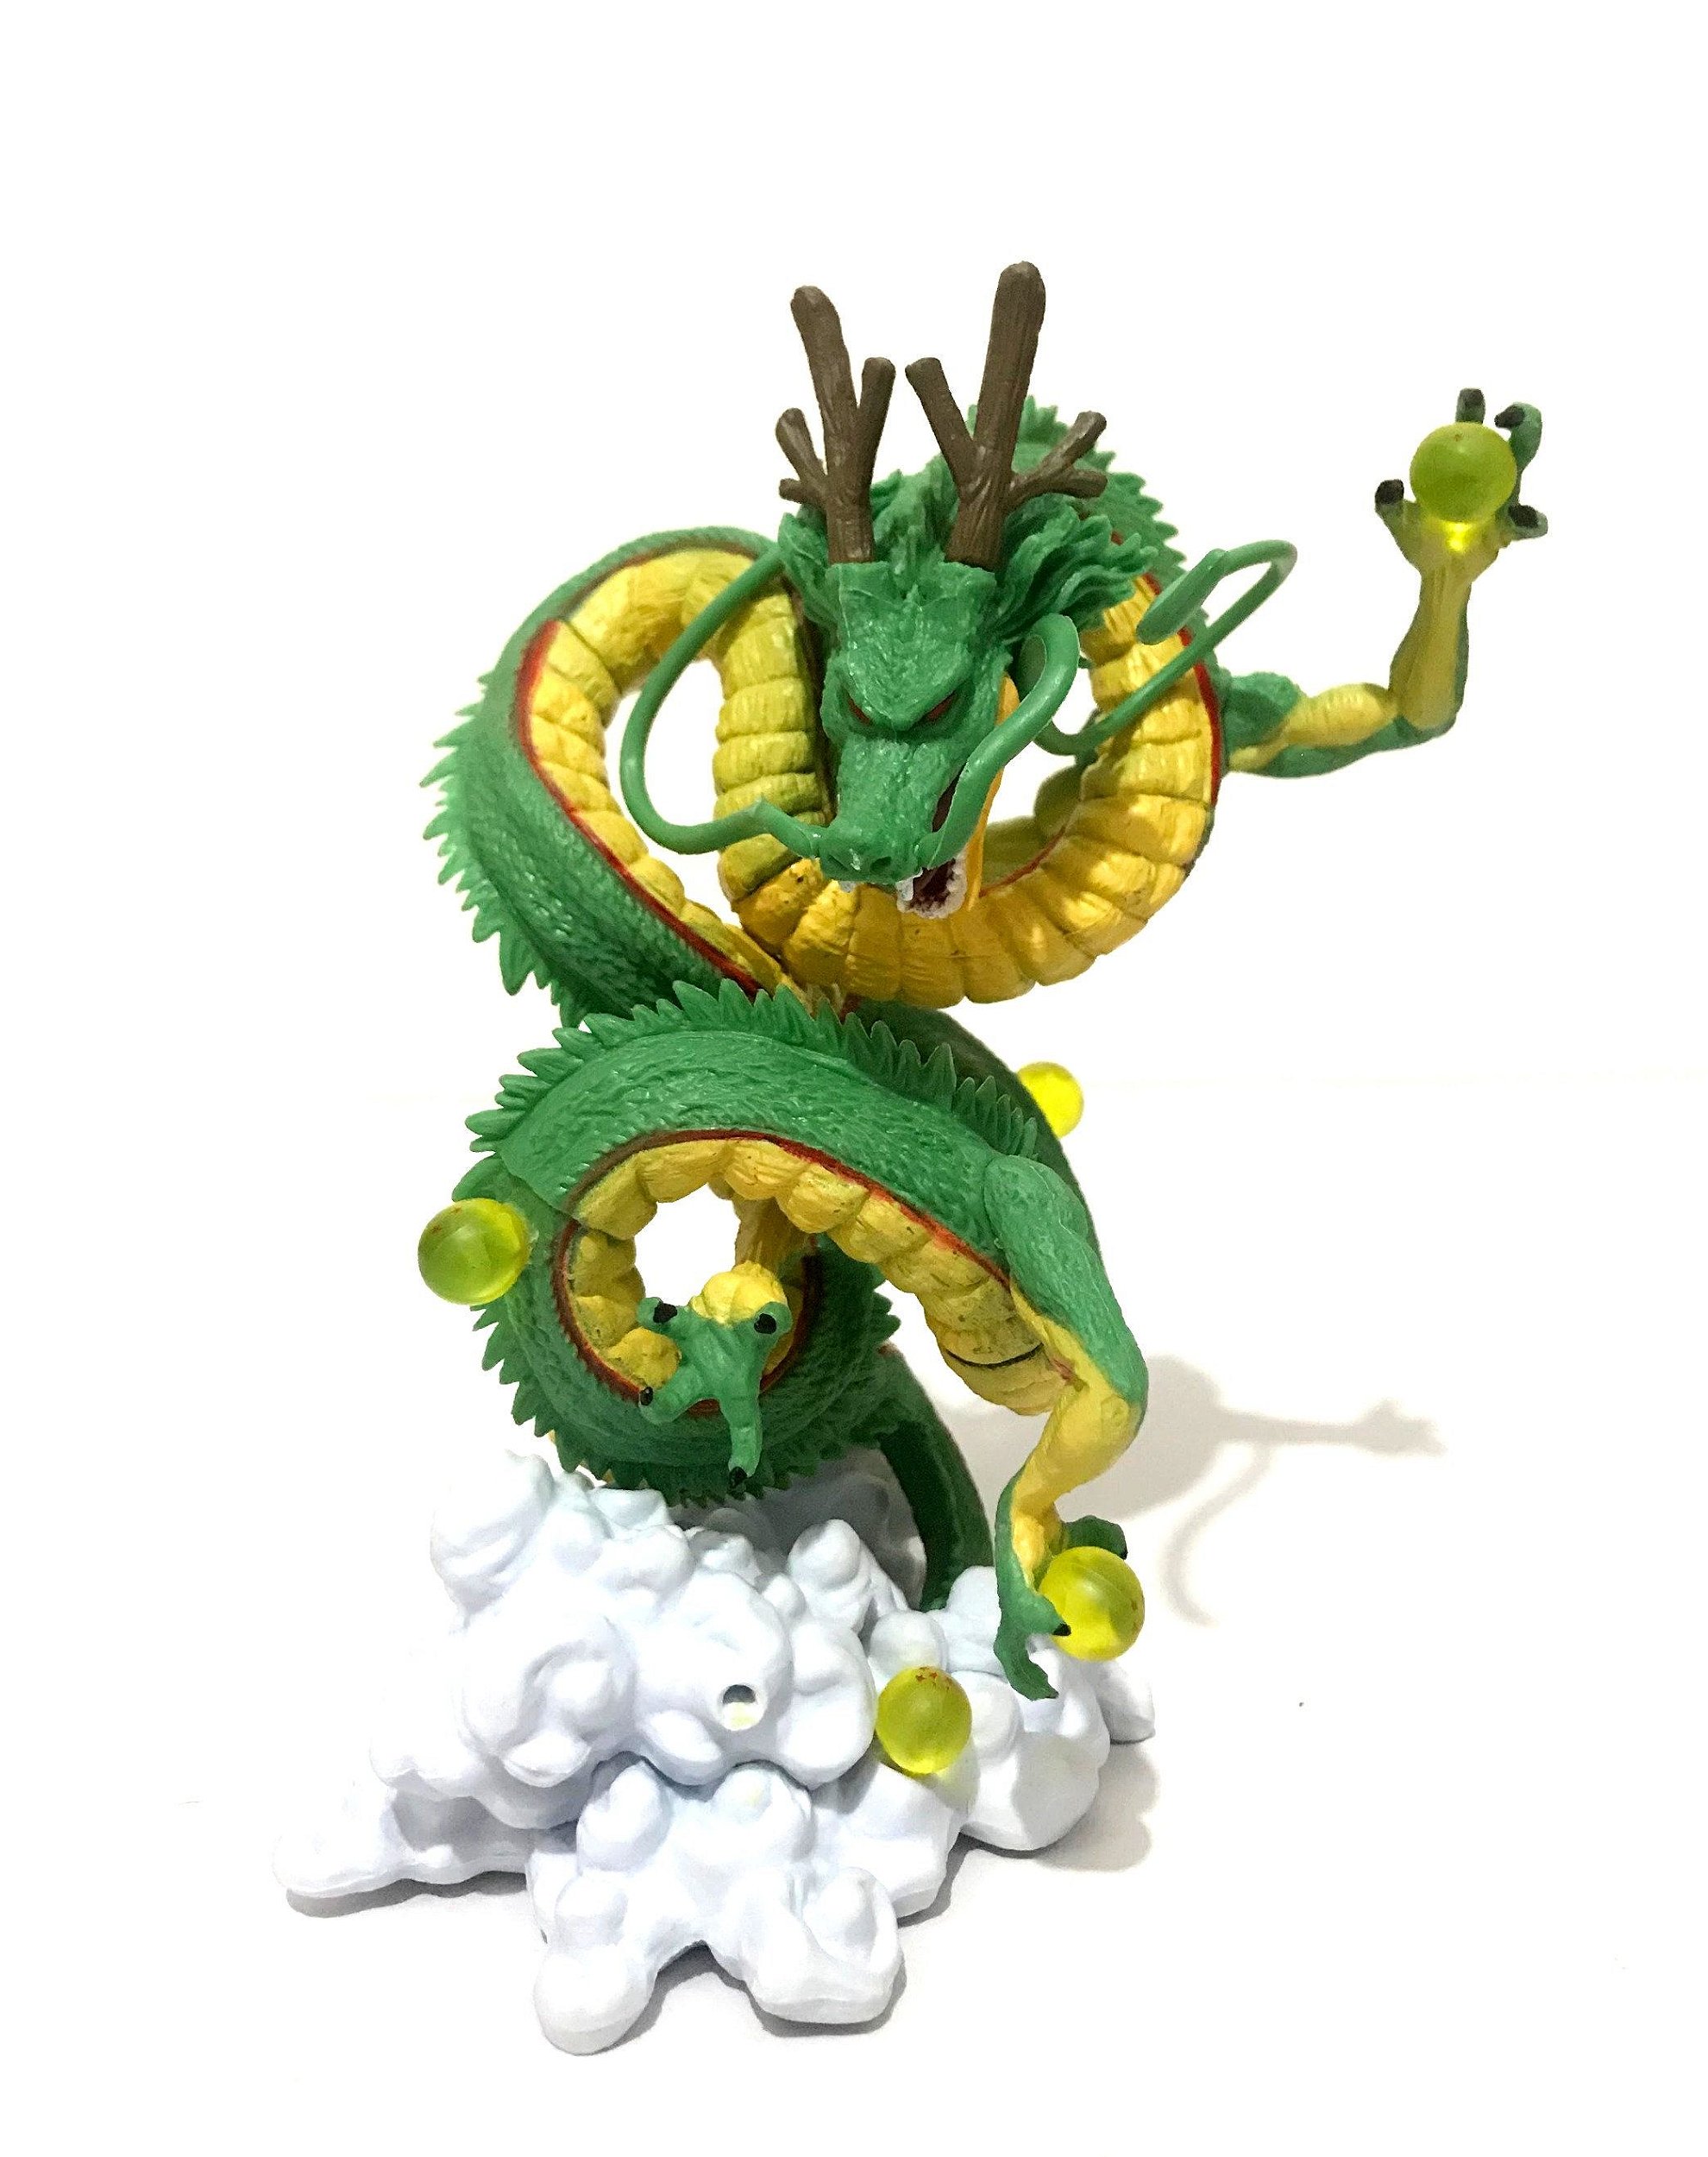 Encontre Dragão Shenlong Dragon Ball Z Action Figure 11cm - Dangos  Importados - Sua Loja de Importados no Brasil!